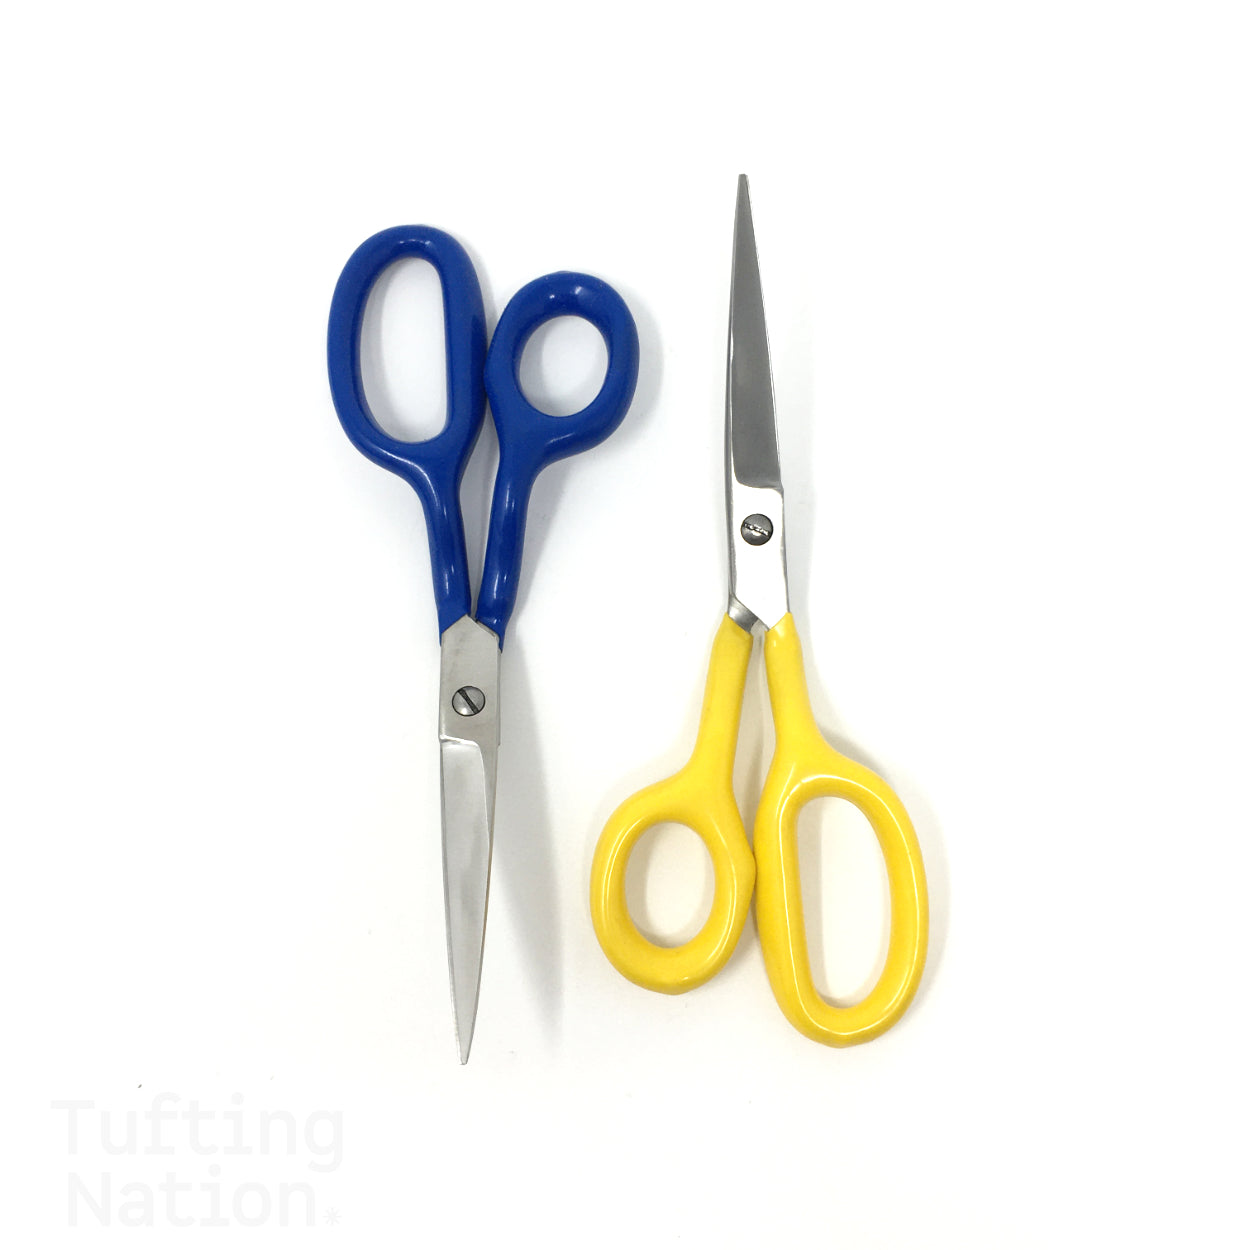 6 Duckbill Tufting Scissors